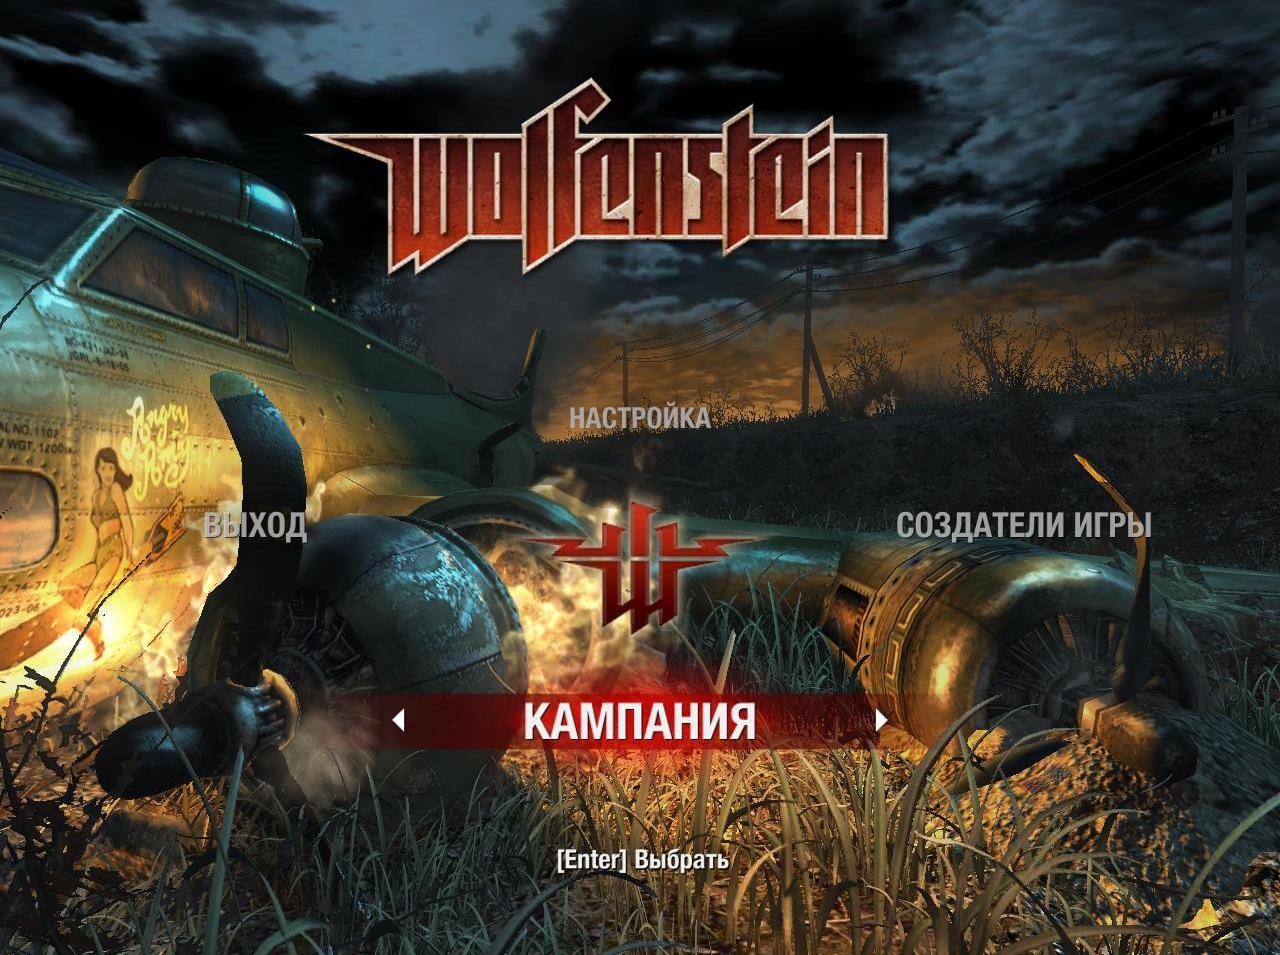 Скриншот из игры Wolfenstein под номером 44